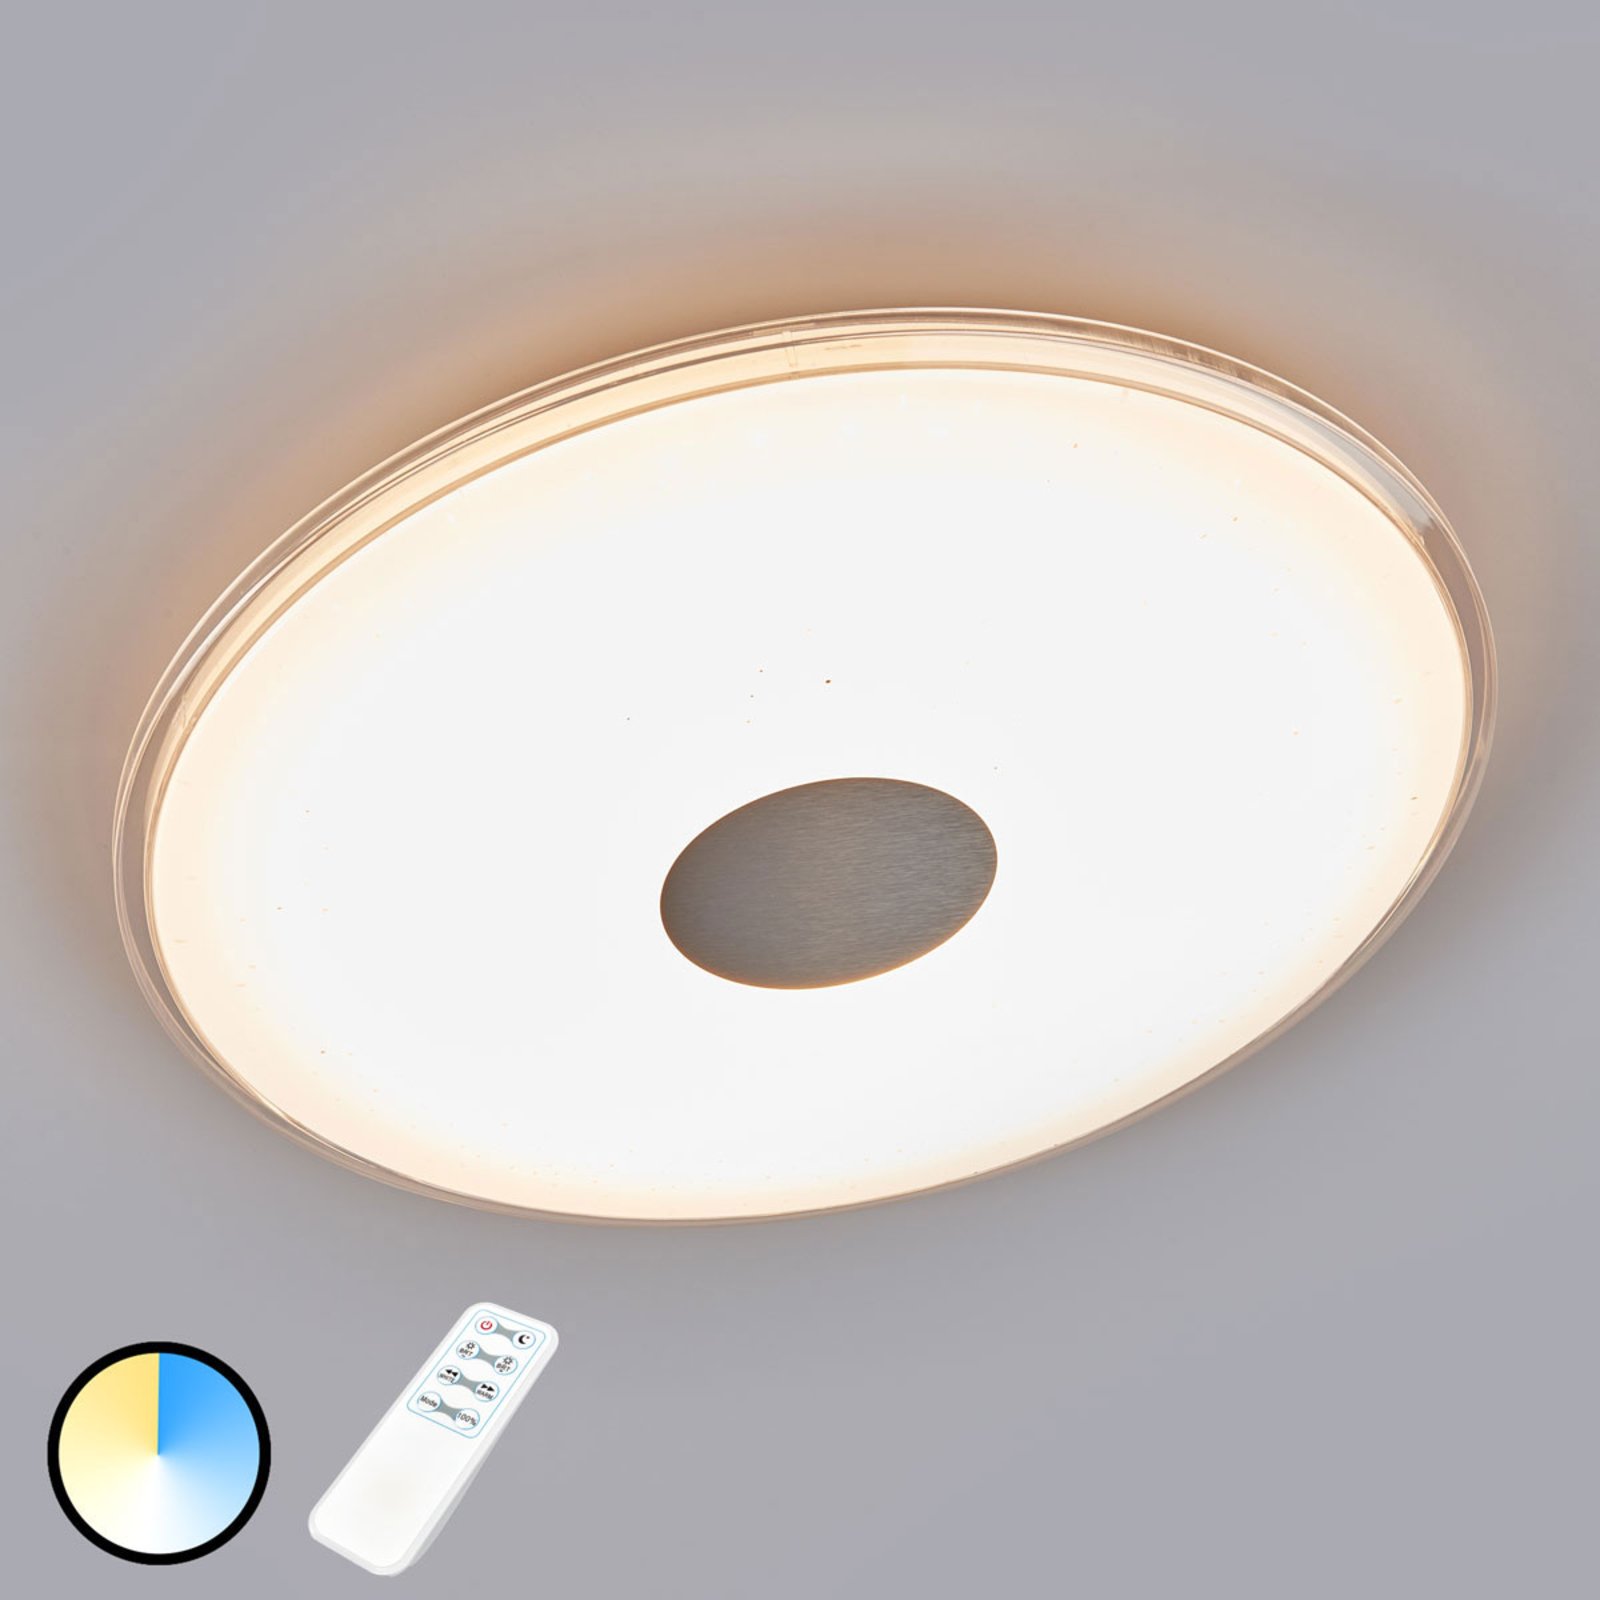 Pyöreä LED-kattovalaisin Shogun, kimallus